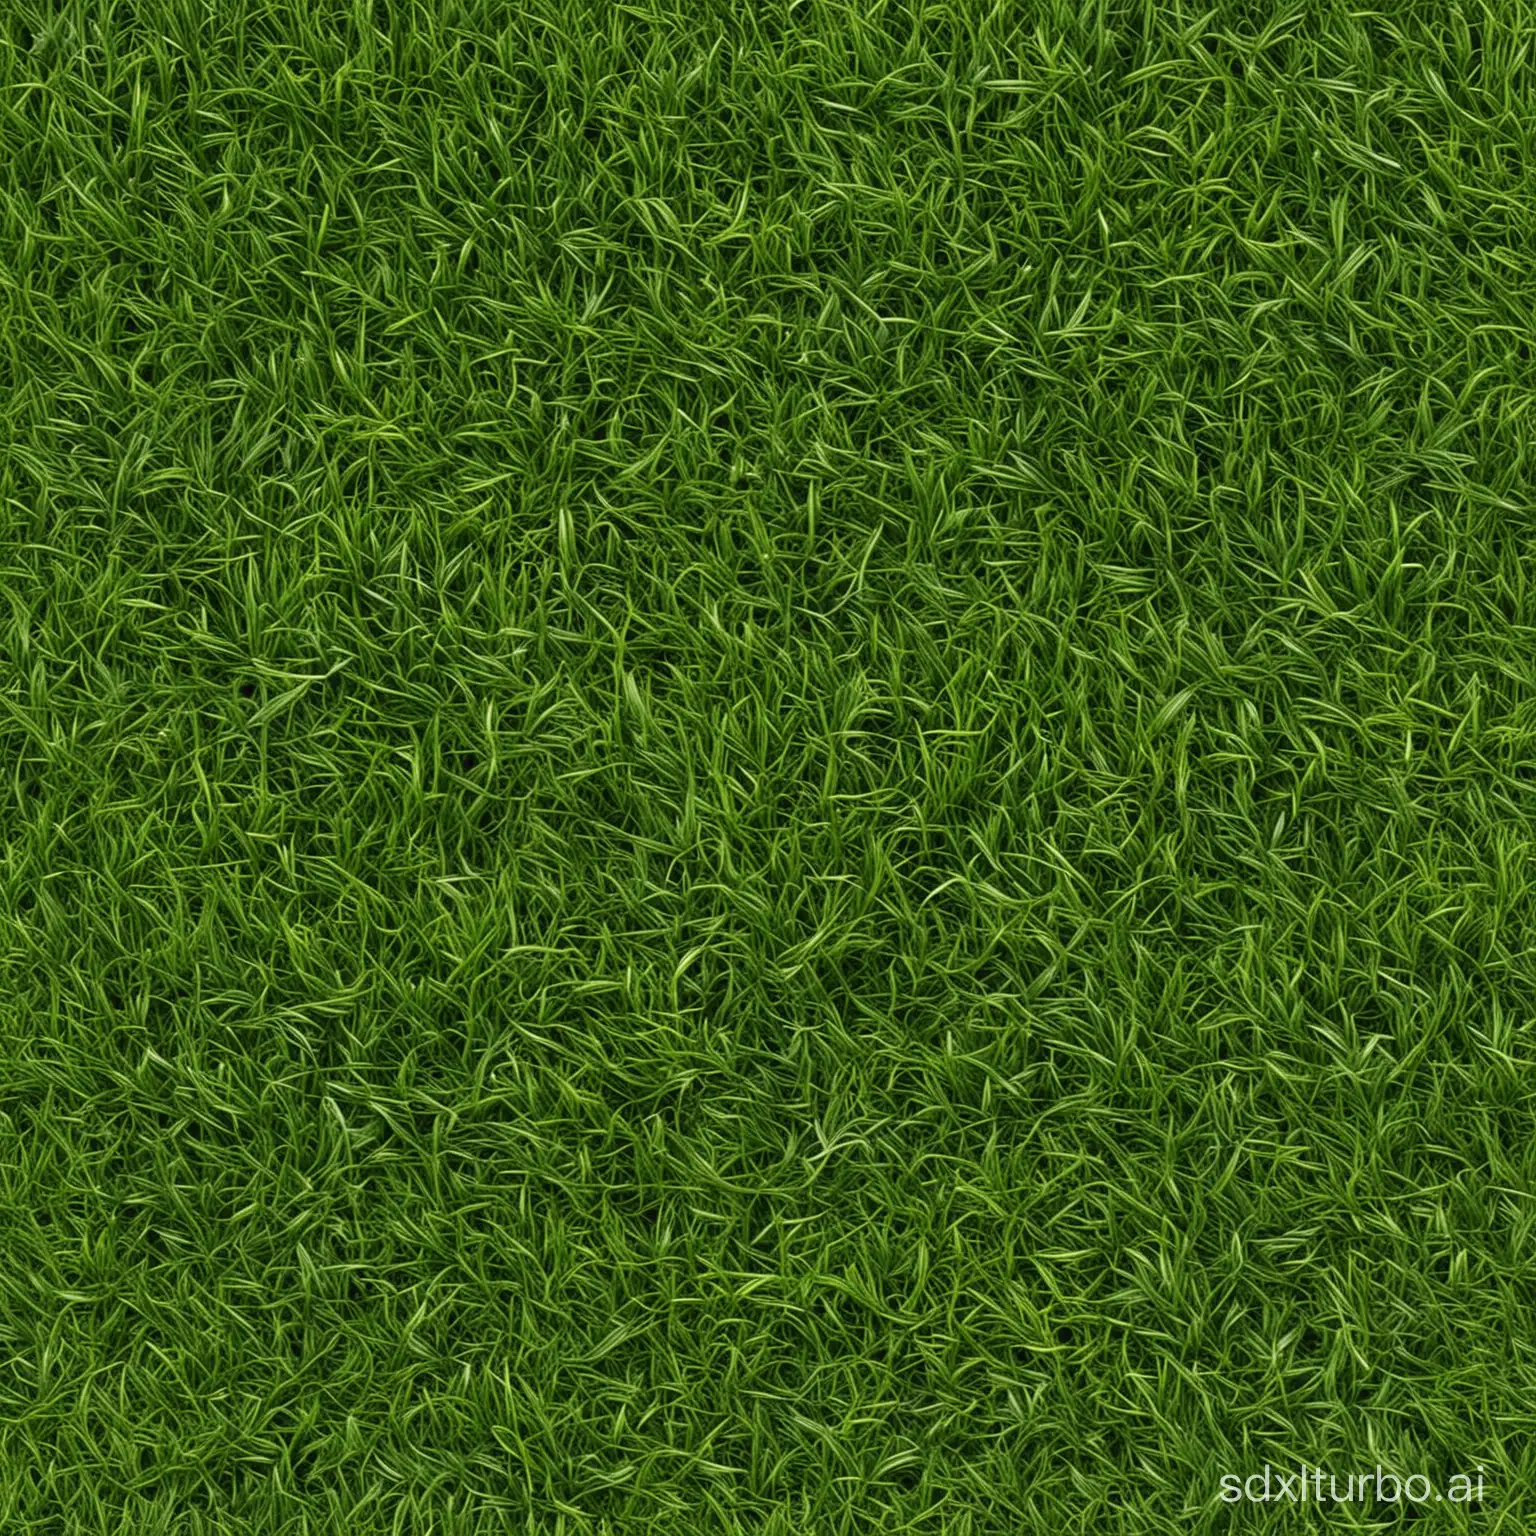 seamless tile of a grass texture